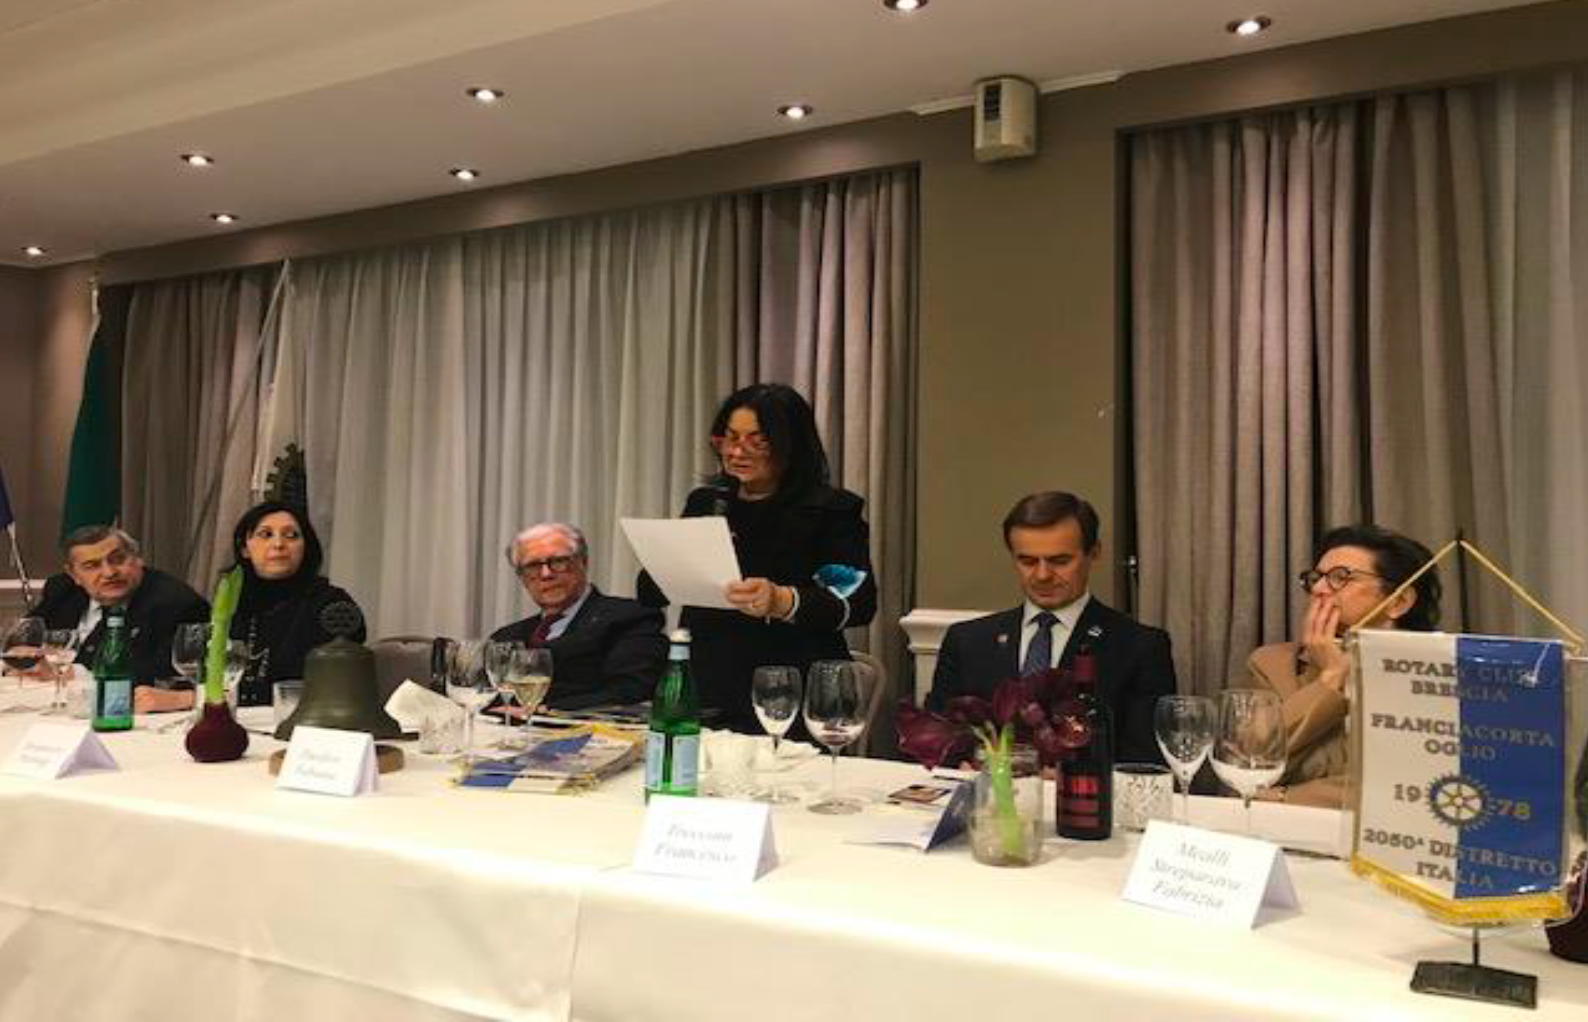 Interclub con Rotary Club Brescia Verola per la presentazione del libro su Enzo Cossu